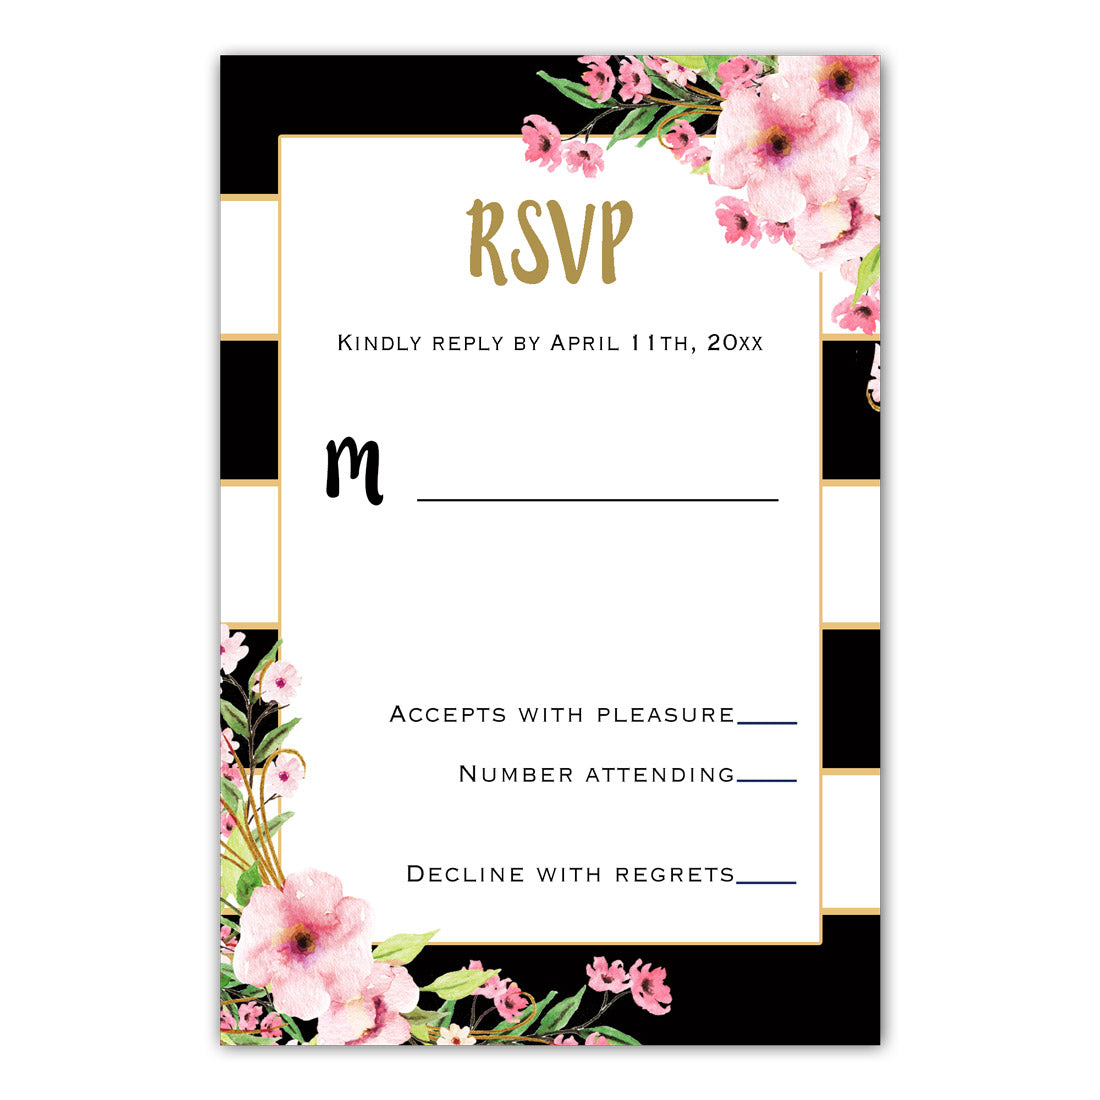 100 Wedding Invitations Floral Pink Gold Black & RSVP Cards